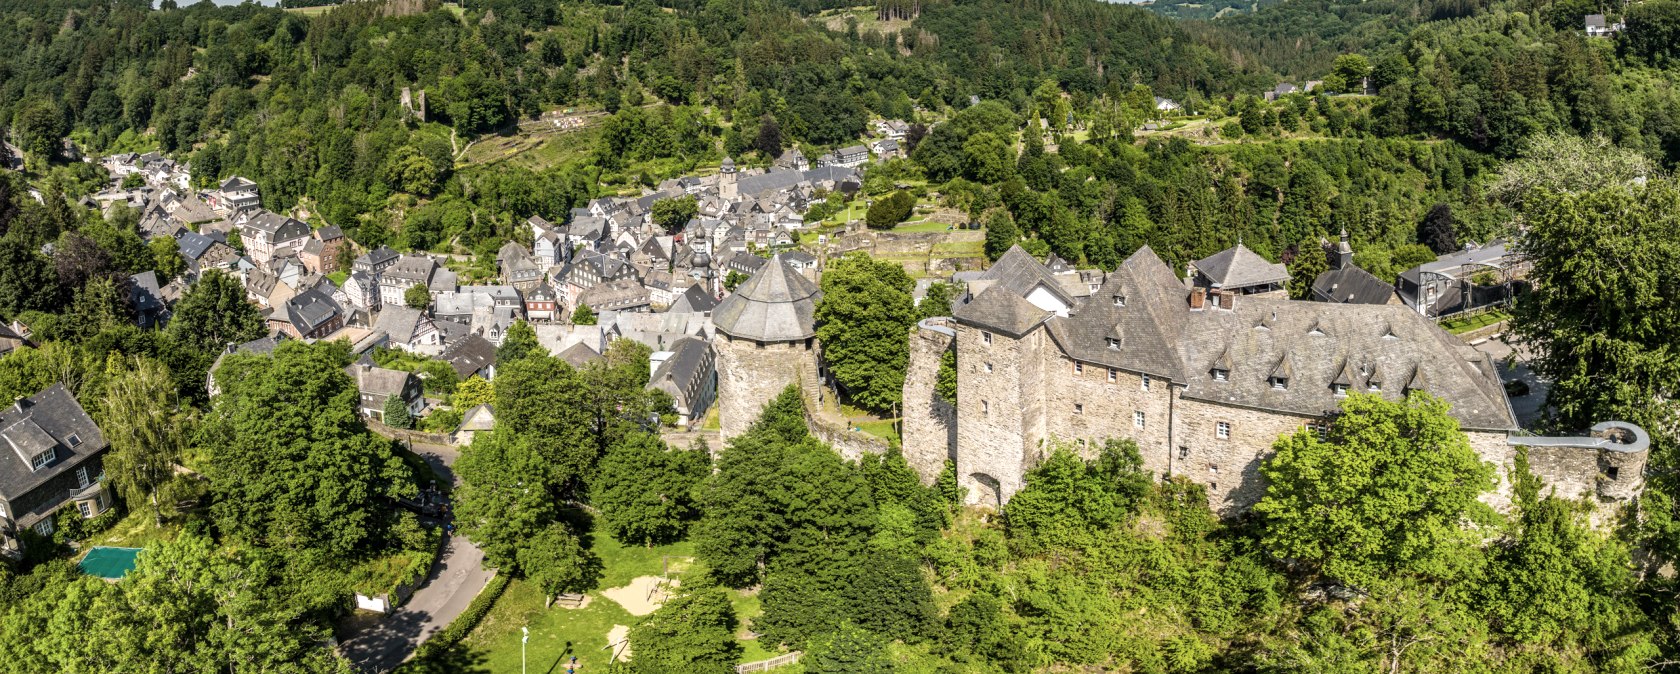 Blick auf Monschau mit Burg, © Eifel Tourismus GmbH, Dominik Ketz